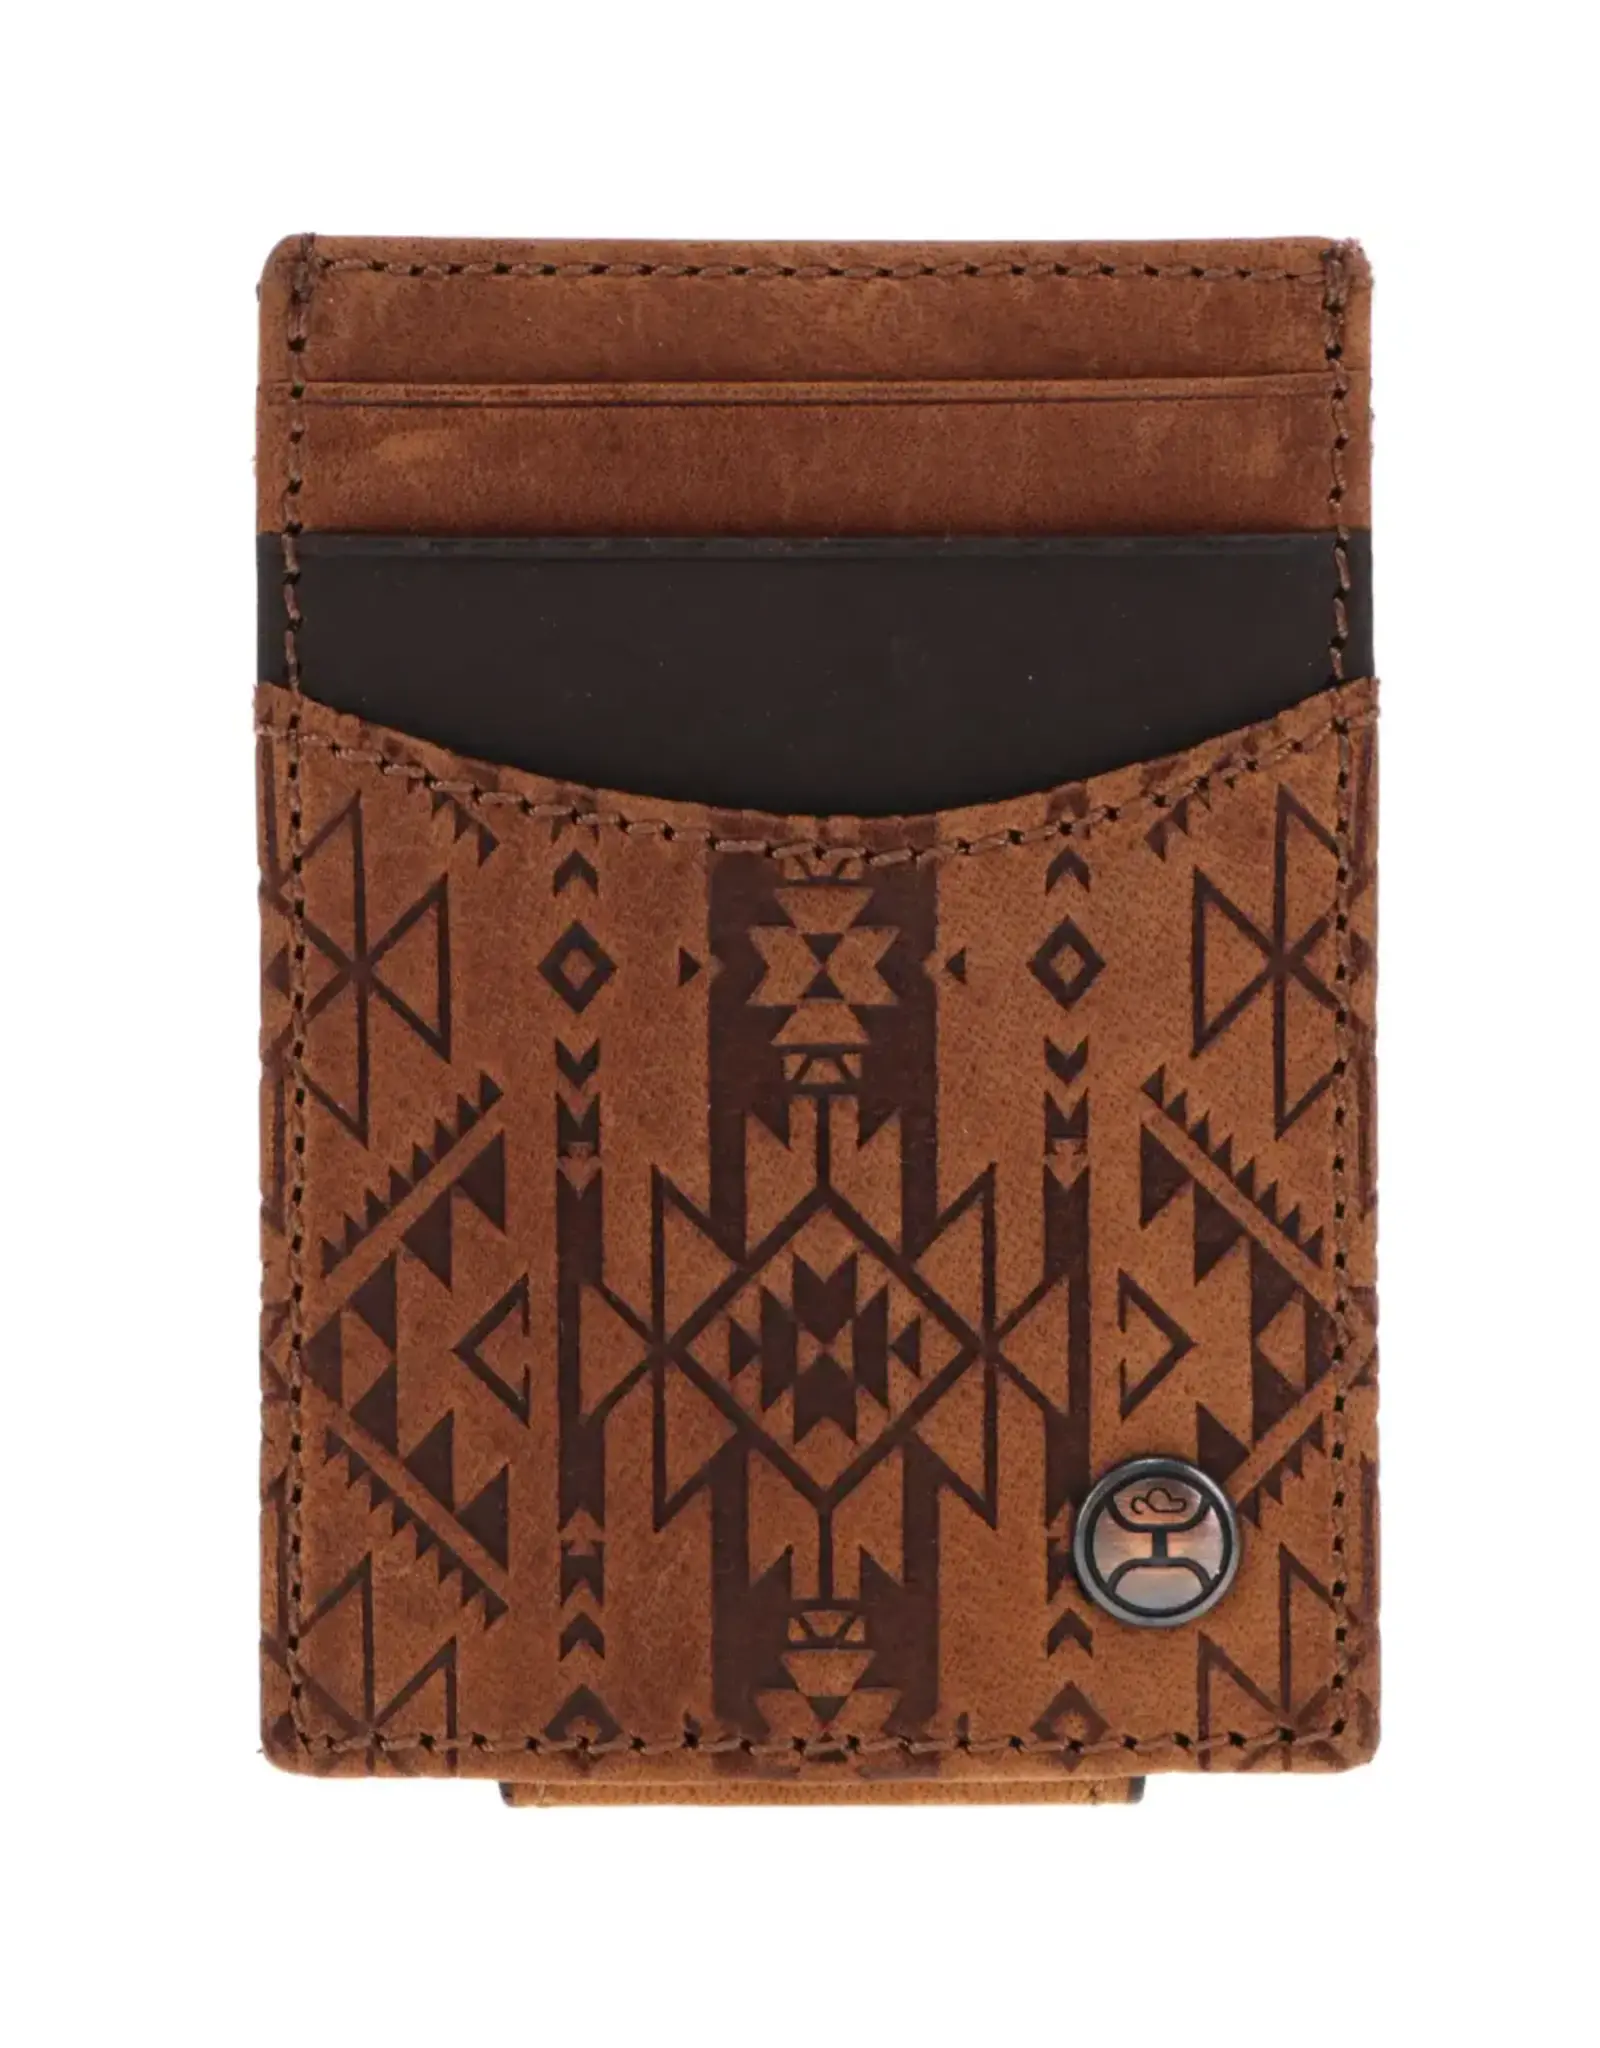 Hooey Brands "Monterey" Money Clip Brown w/ Aztec Embossed Print Wallet